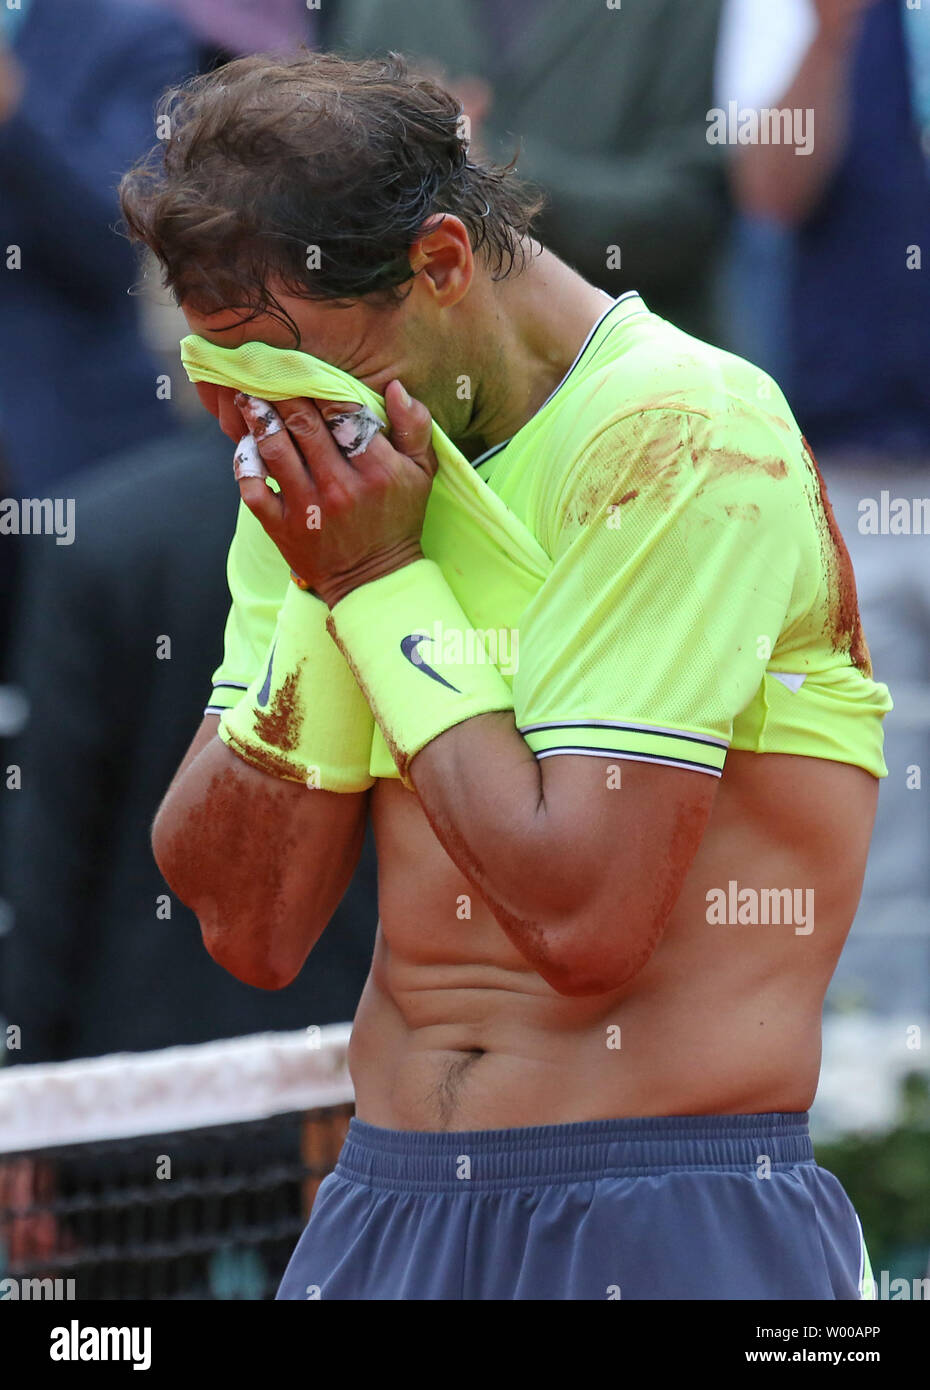 Rafael Nadal d'Espagne réagit après avoir remporté sa French Open men's match final contre Dominic Thiem de l'Autriche à Roland Garros à Paris le 9 juin 2019. Nadal défait Thiem 6-3, 5-7, 6-1, 6-1 pour remporter son 12e championnat de France. Photo de David Silpa/UPI Banque D'Images